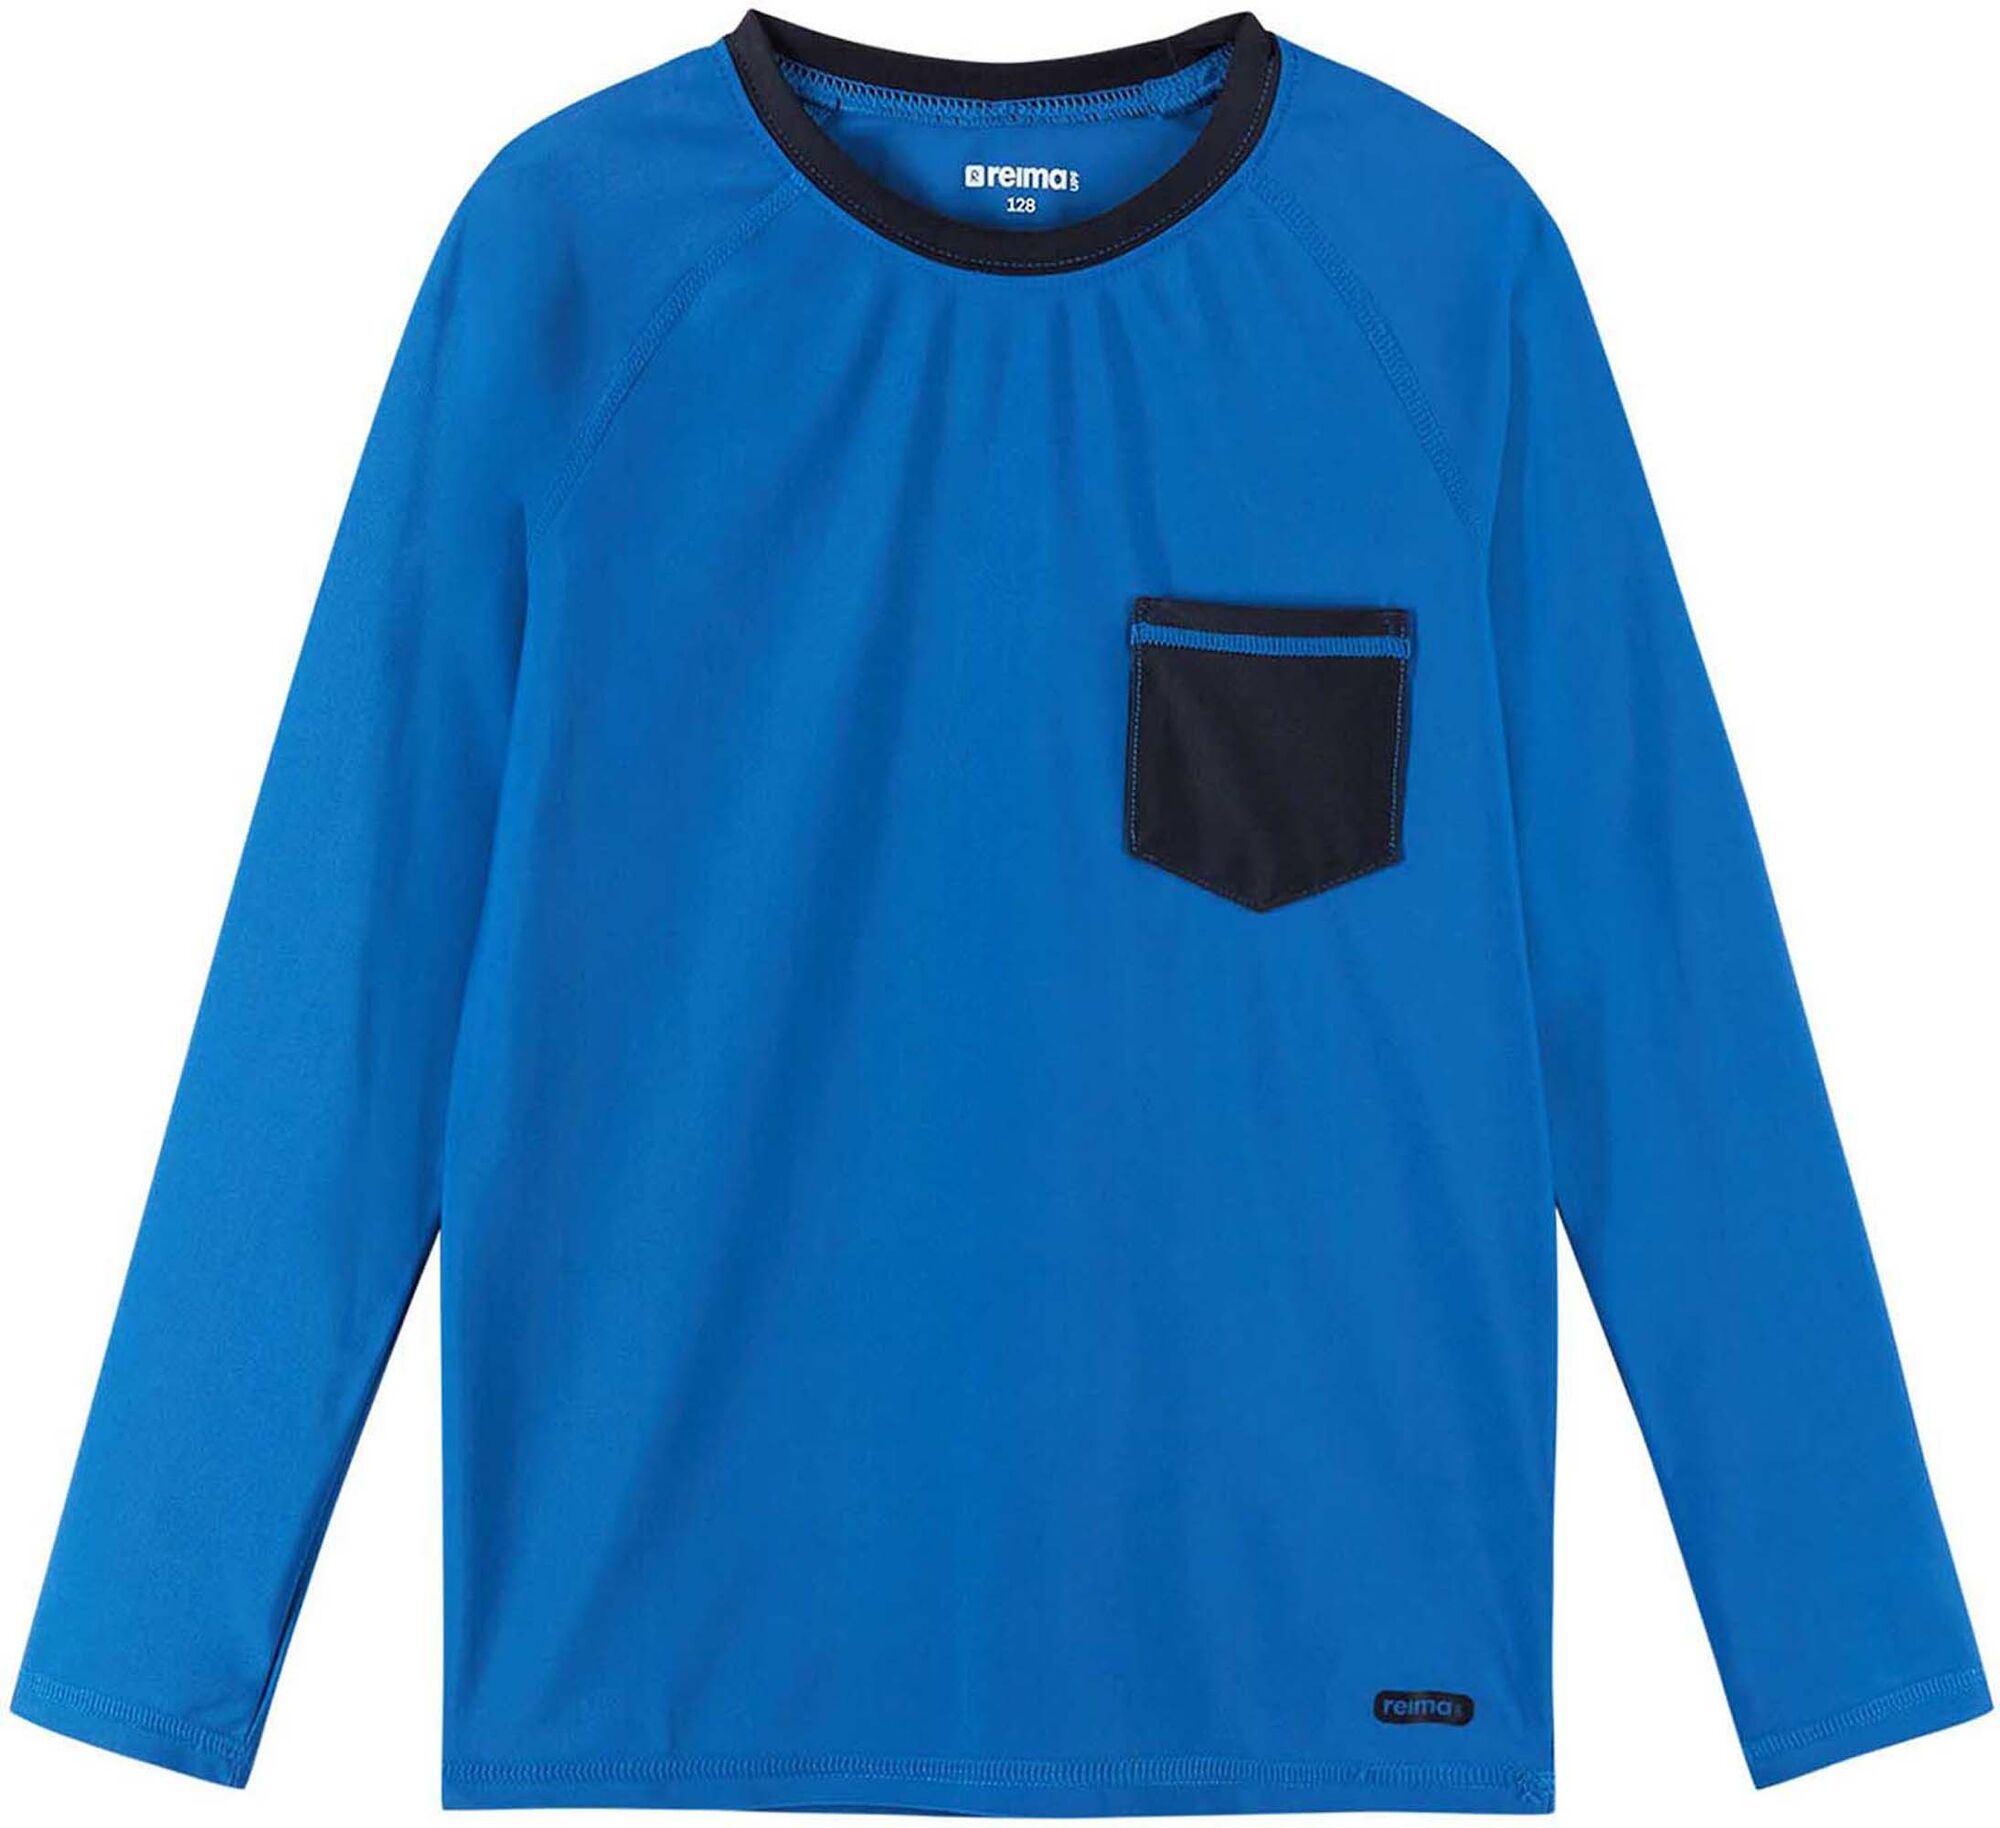 Reima Kroolaus UV-tröja Blue 116